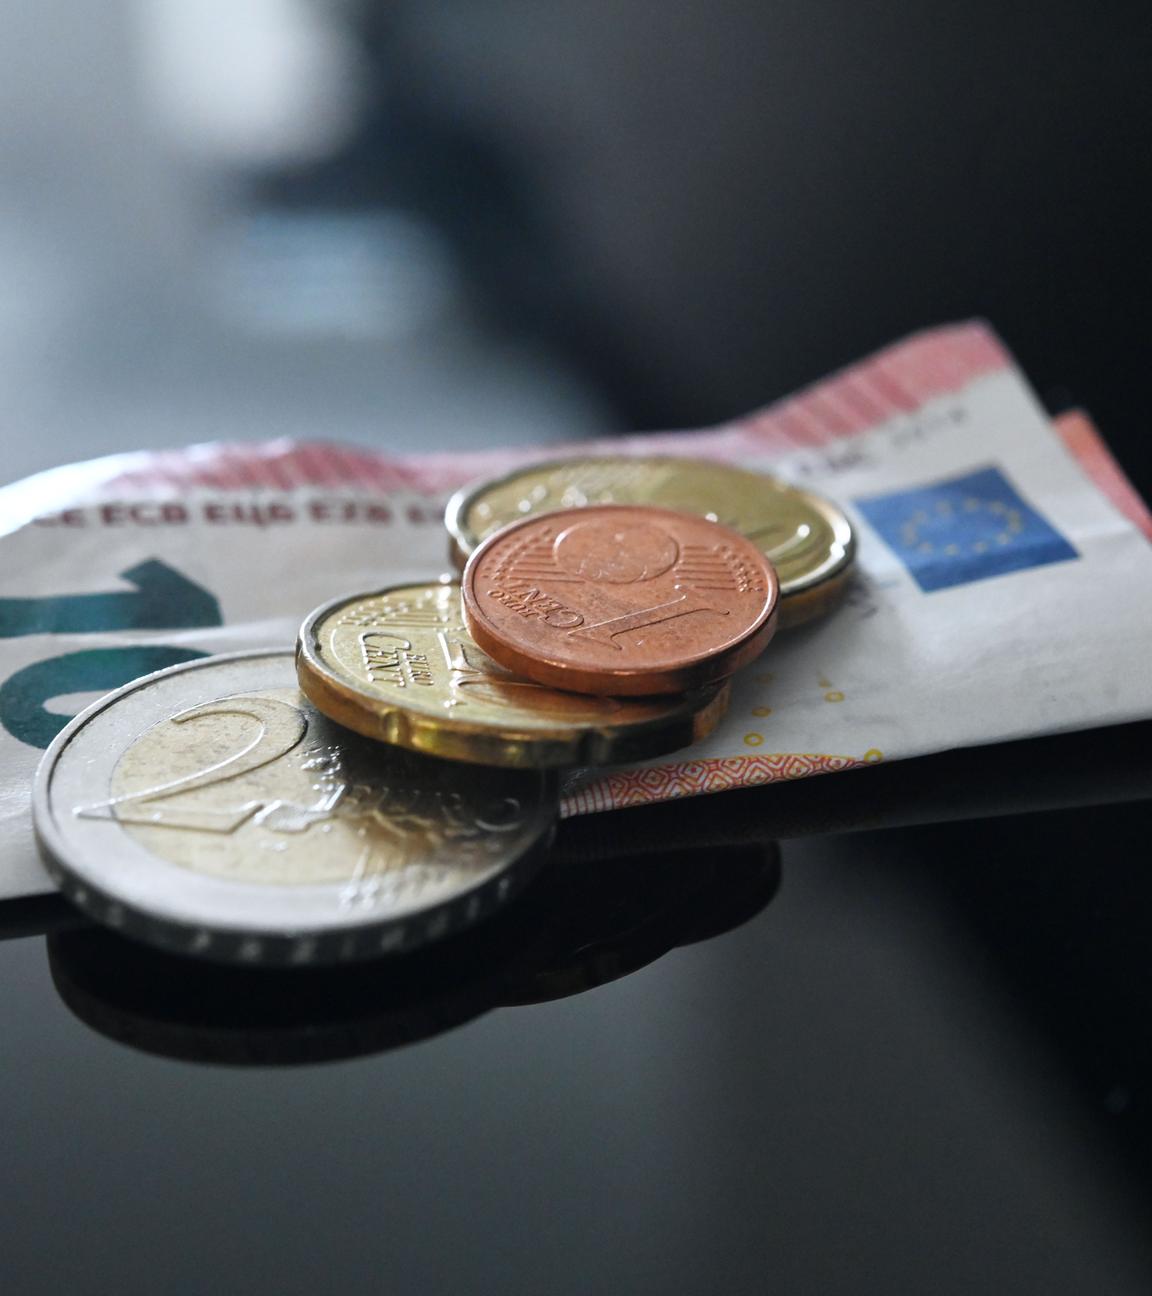 Münzen und ein Geldschein im Wert von insgesamt 12,41 Euro liegen auf einer schwarzen Fläche.